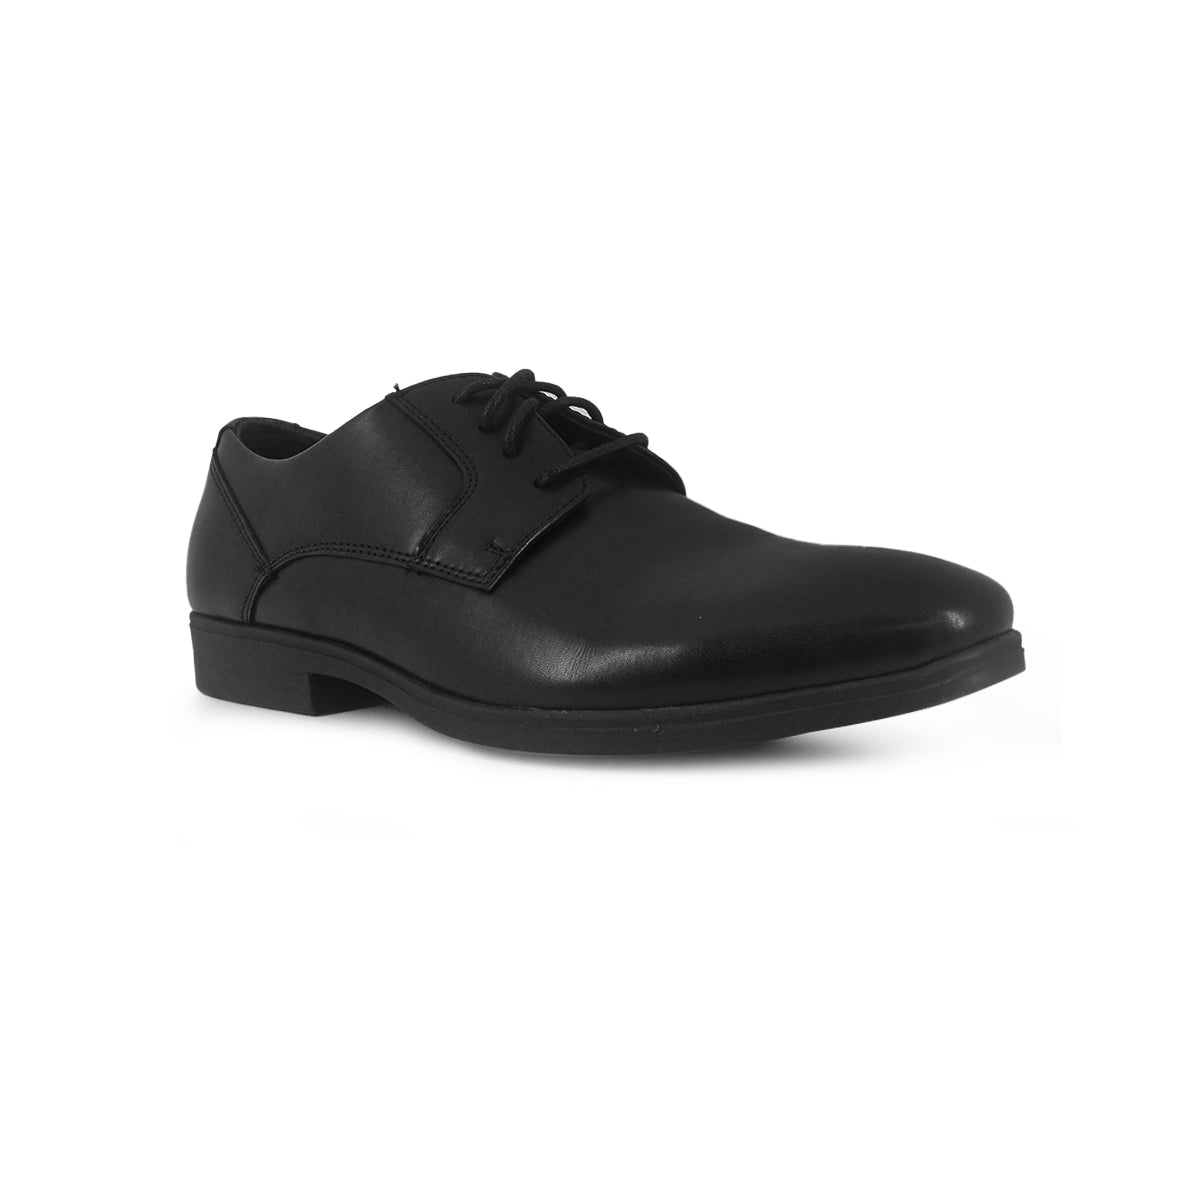 Zapatos Negros Para Hombre En Cuero 2322